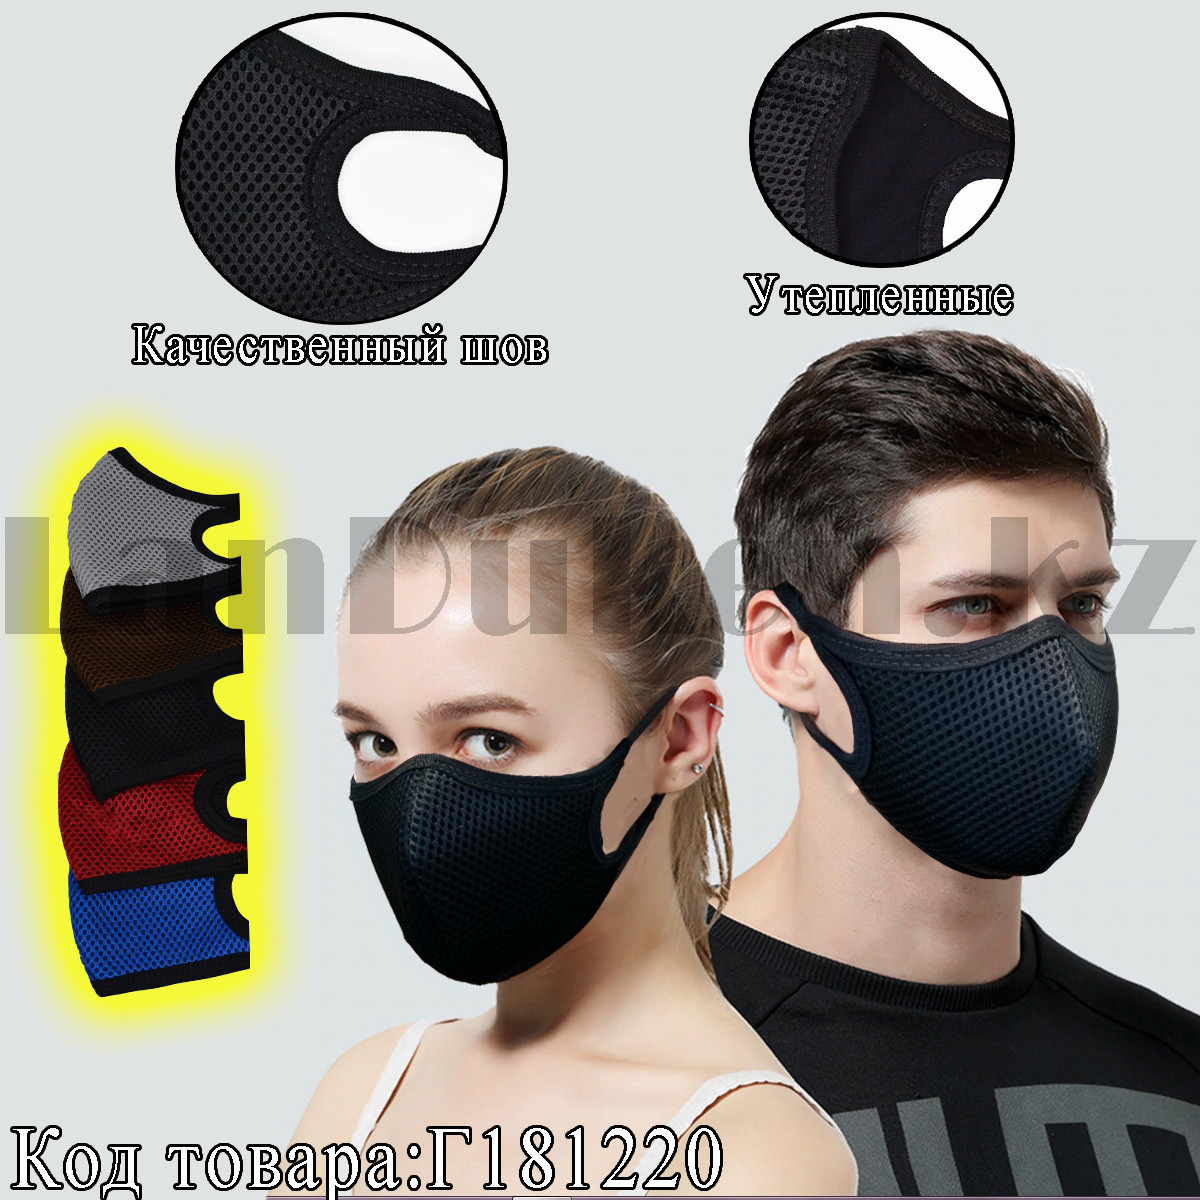 Многоразовая защитная маска от пыли и холода зимние утепленные двухслойные в сетку Fashion Mask в ассортименте, фото 1